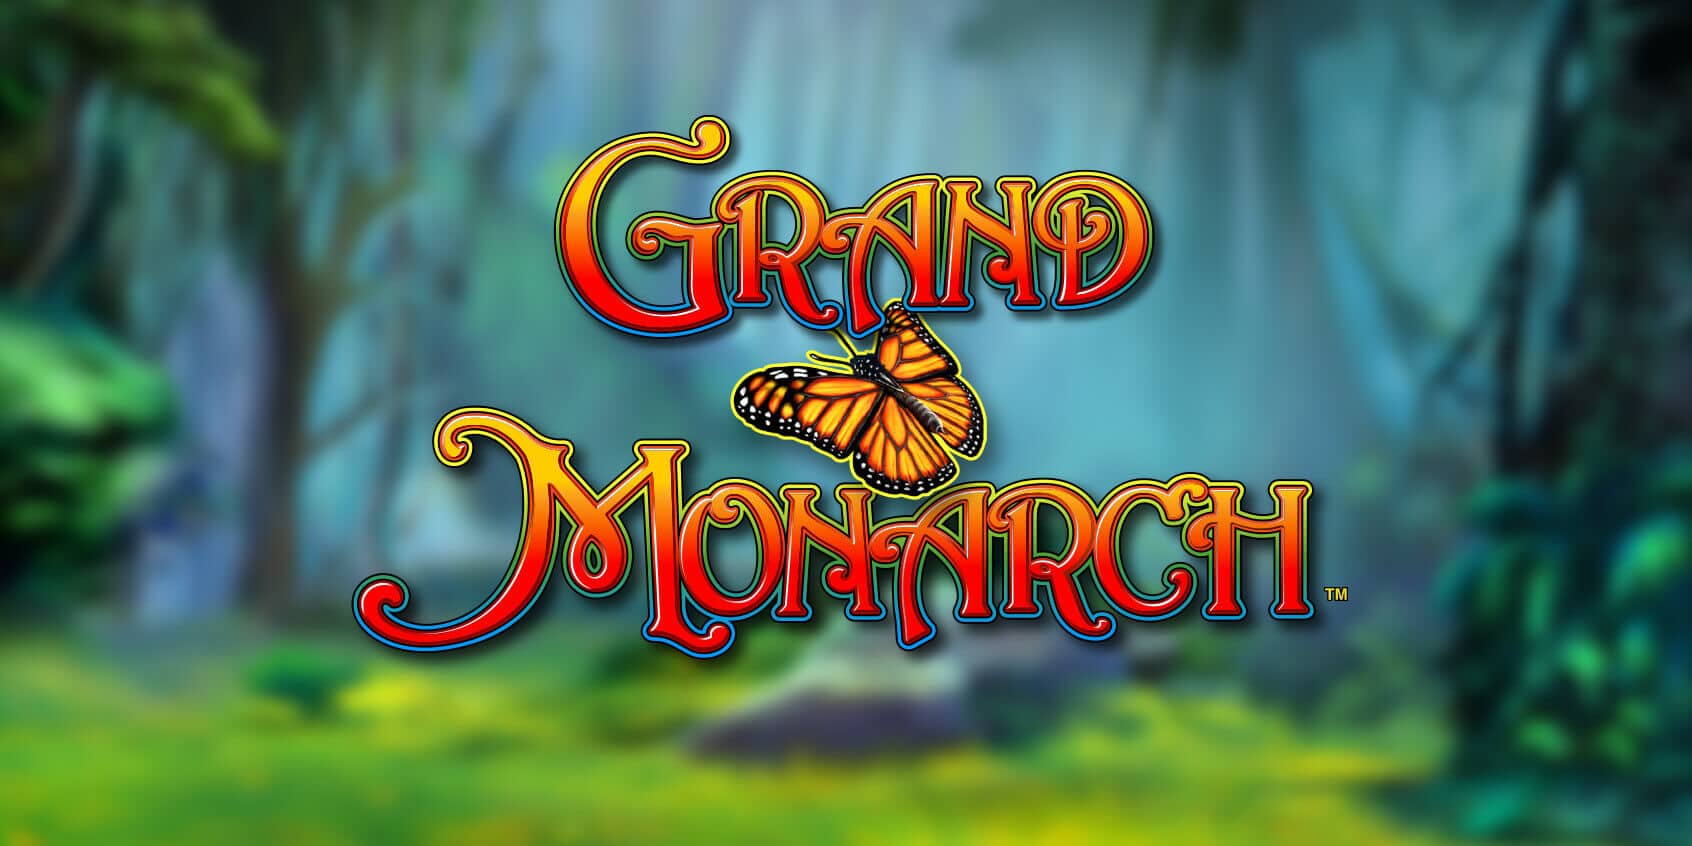 Grand Monarch Slot